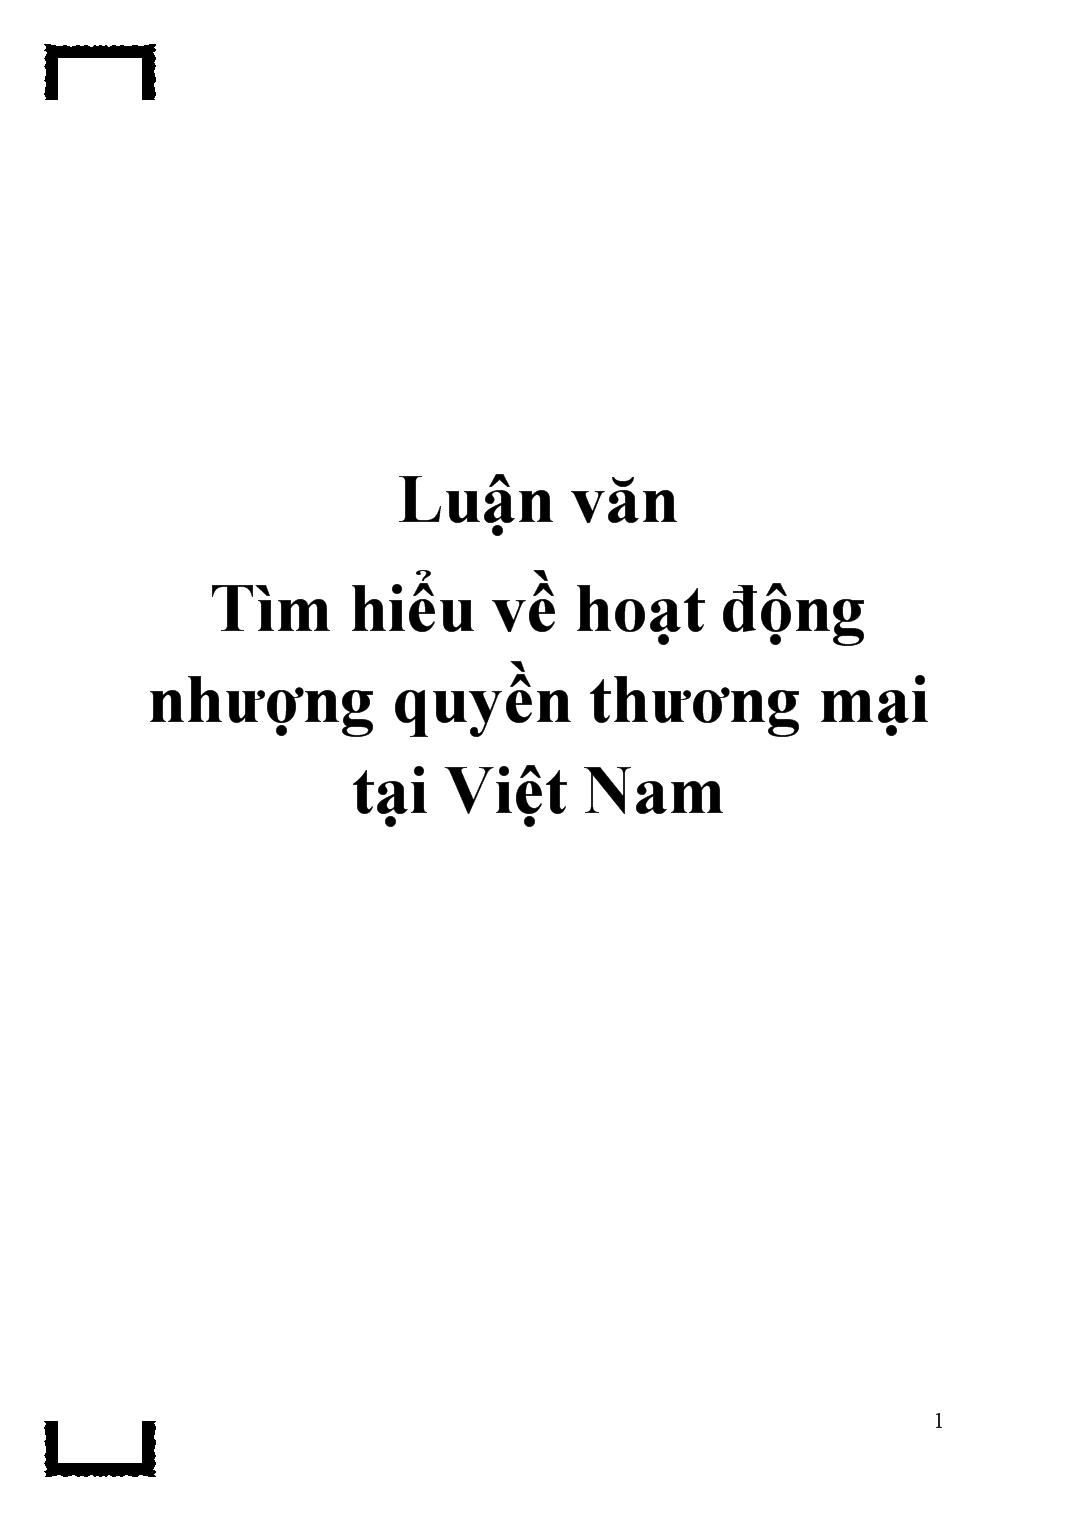 Luận văn Tìm hiểu về hoạt động nhượng quyền thương mại tại Việt Nam trang 1